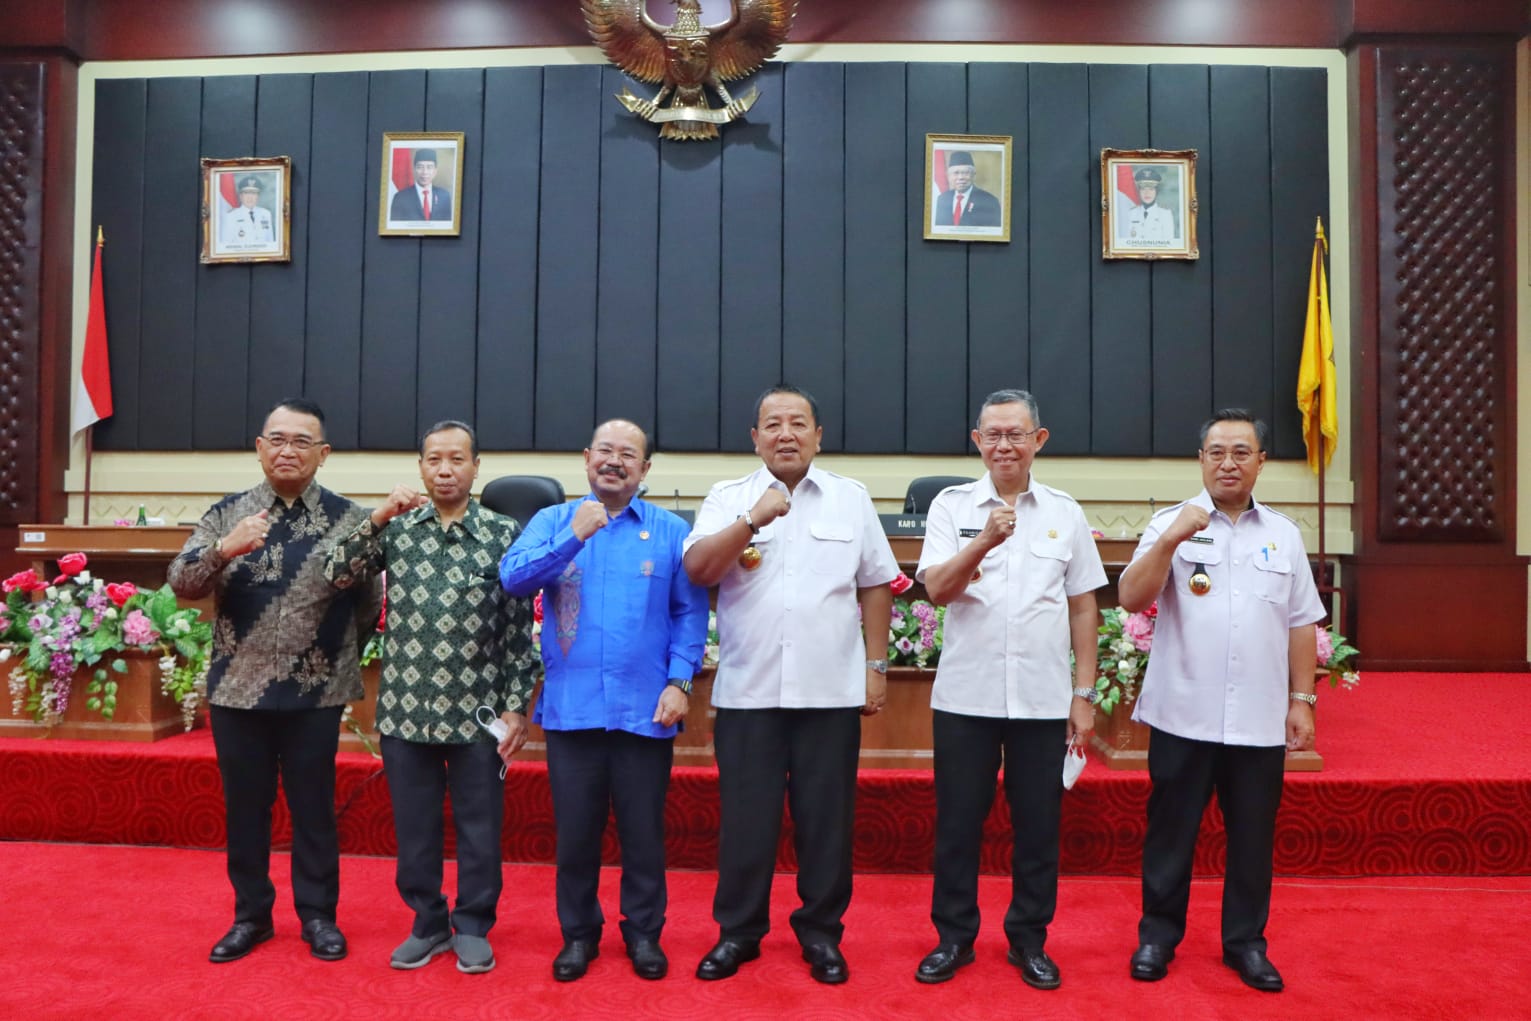 Pemprov Lampung dan Komisi Yudisial Gelar Kegiatan Edukasi Publik, Gubernur : Perlu Adanya Sosialisasi Hukum di Wilayah Pedesaan yang Tidak Memiliki Akses Informasi